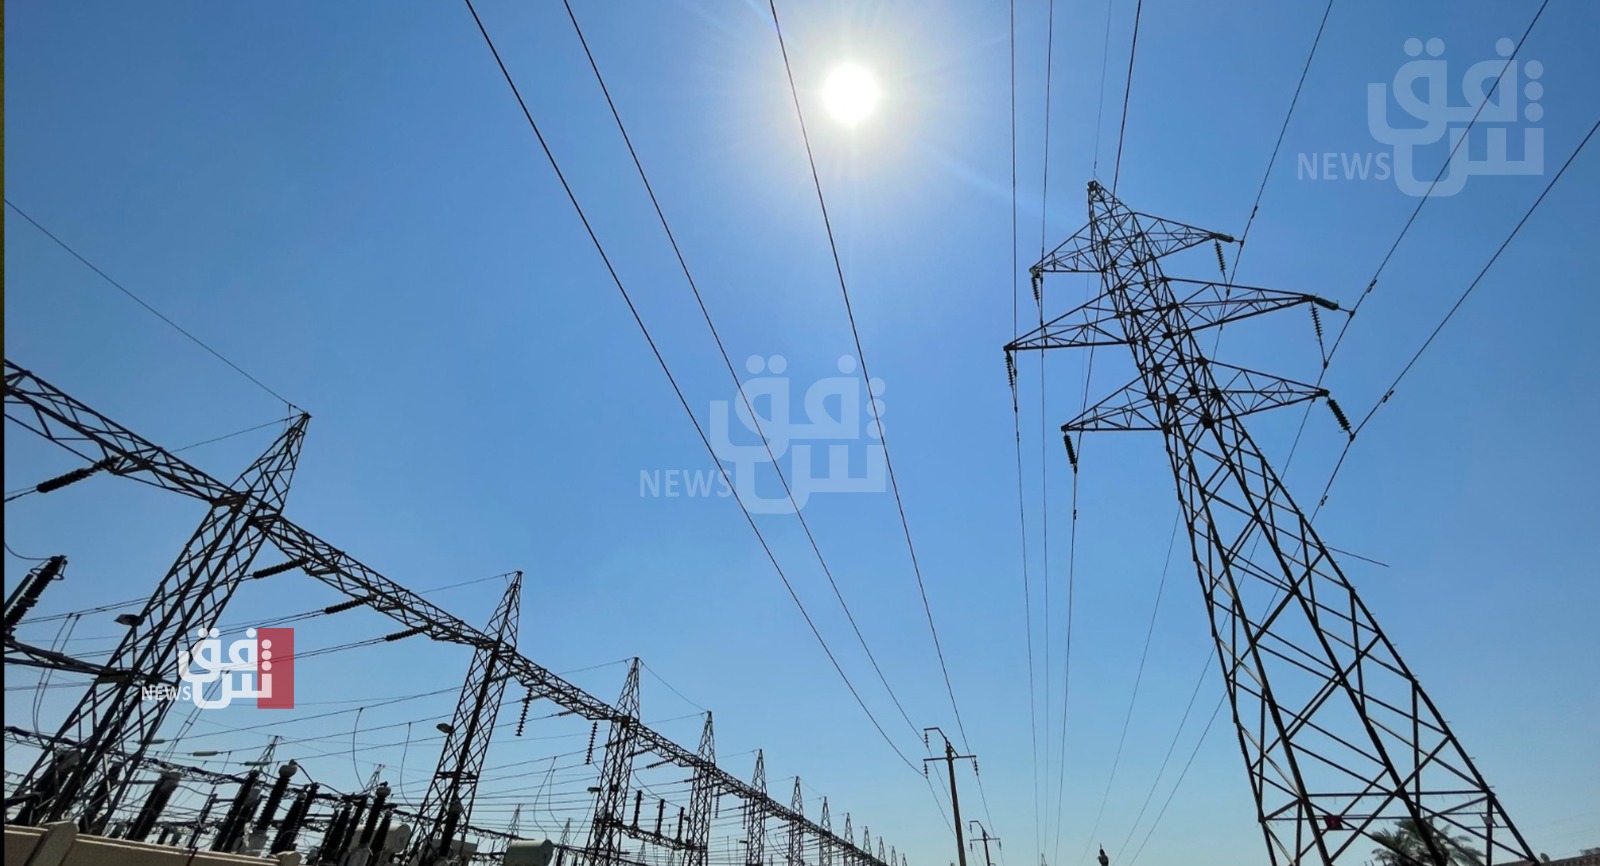 الكهرباء العراقية تتعهد بدفع مستحقات الغاز الايراني خلال يومين  